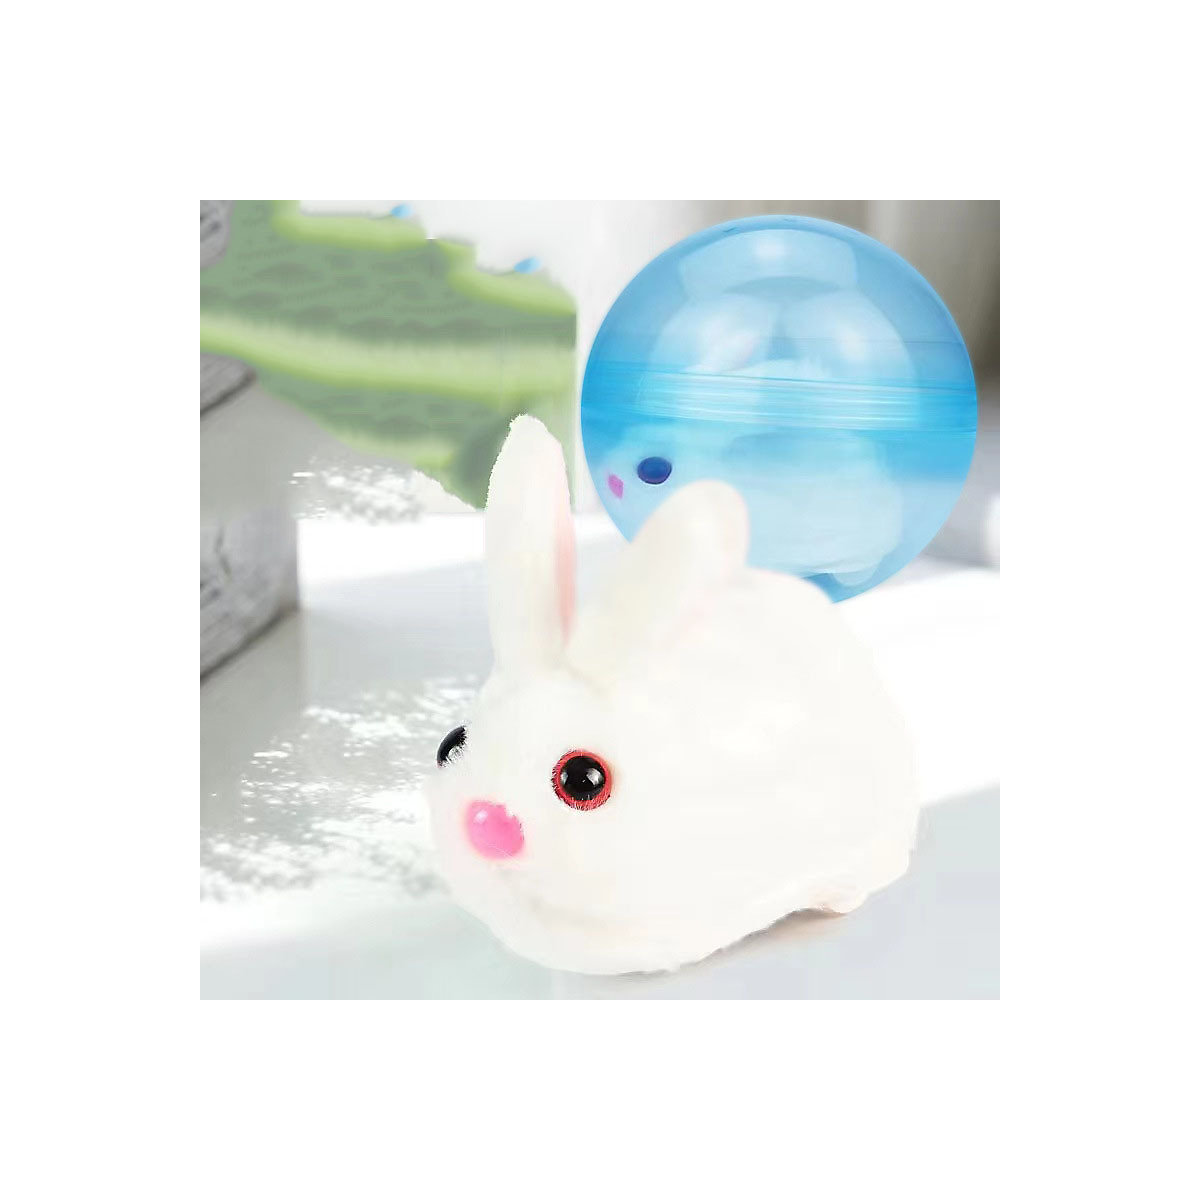 Decome Leuchtender Krabbelball Kinderspielzeug Simulierter elektrischer Hase mit Rollender Hamster Kugel Spielzeug